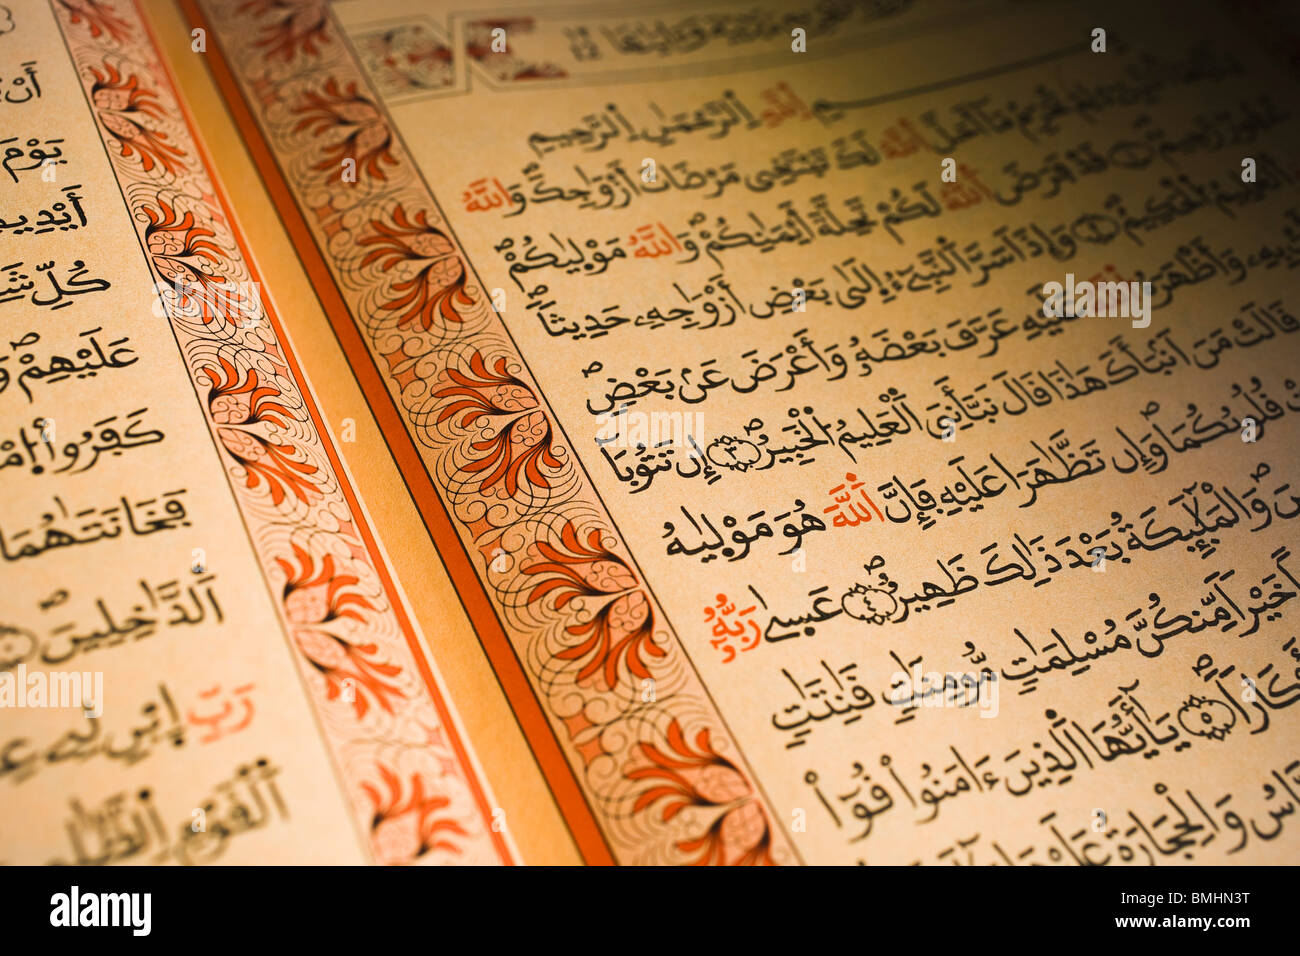 Le Coran, l'arabe écrit dans le livre saint de l'Islam Banque D'Images